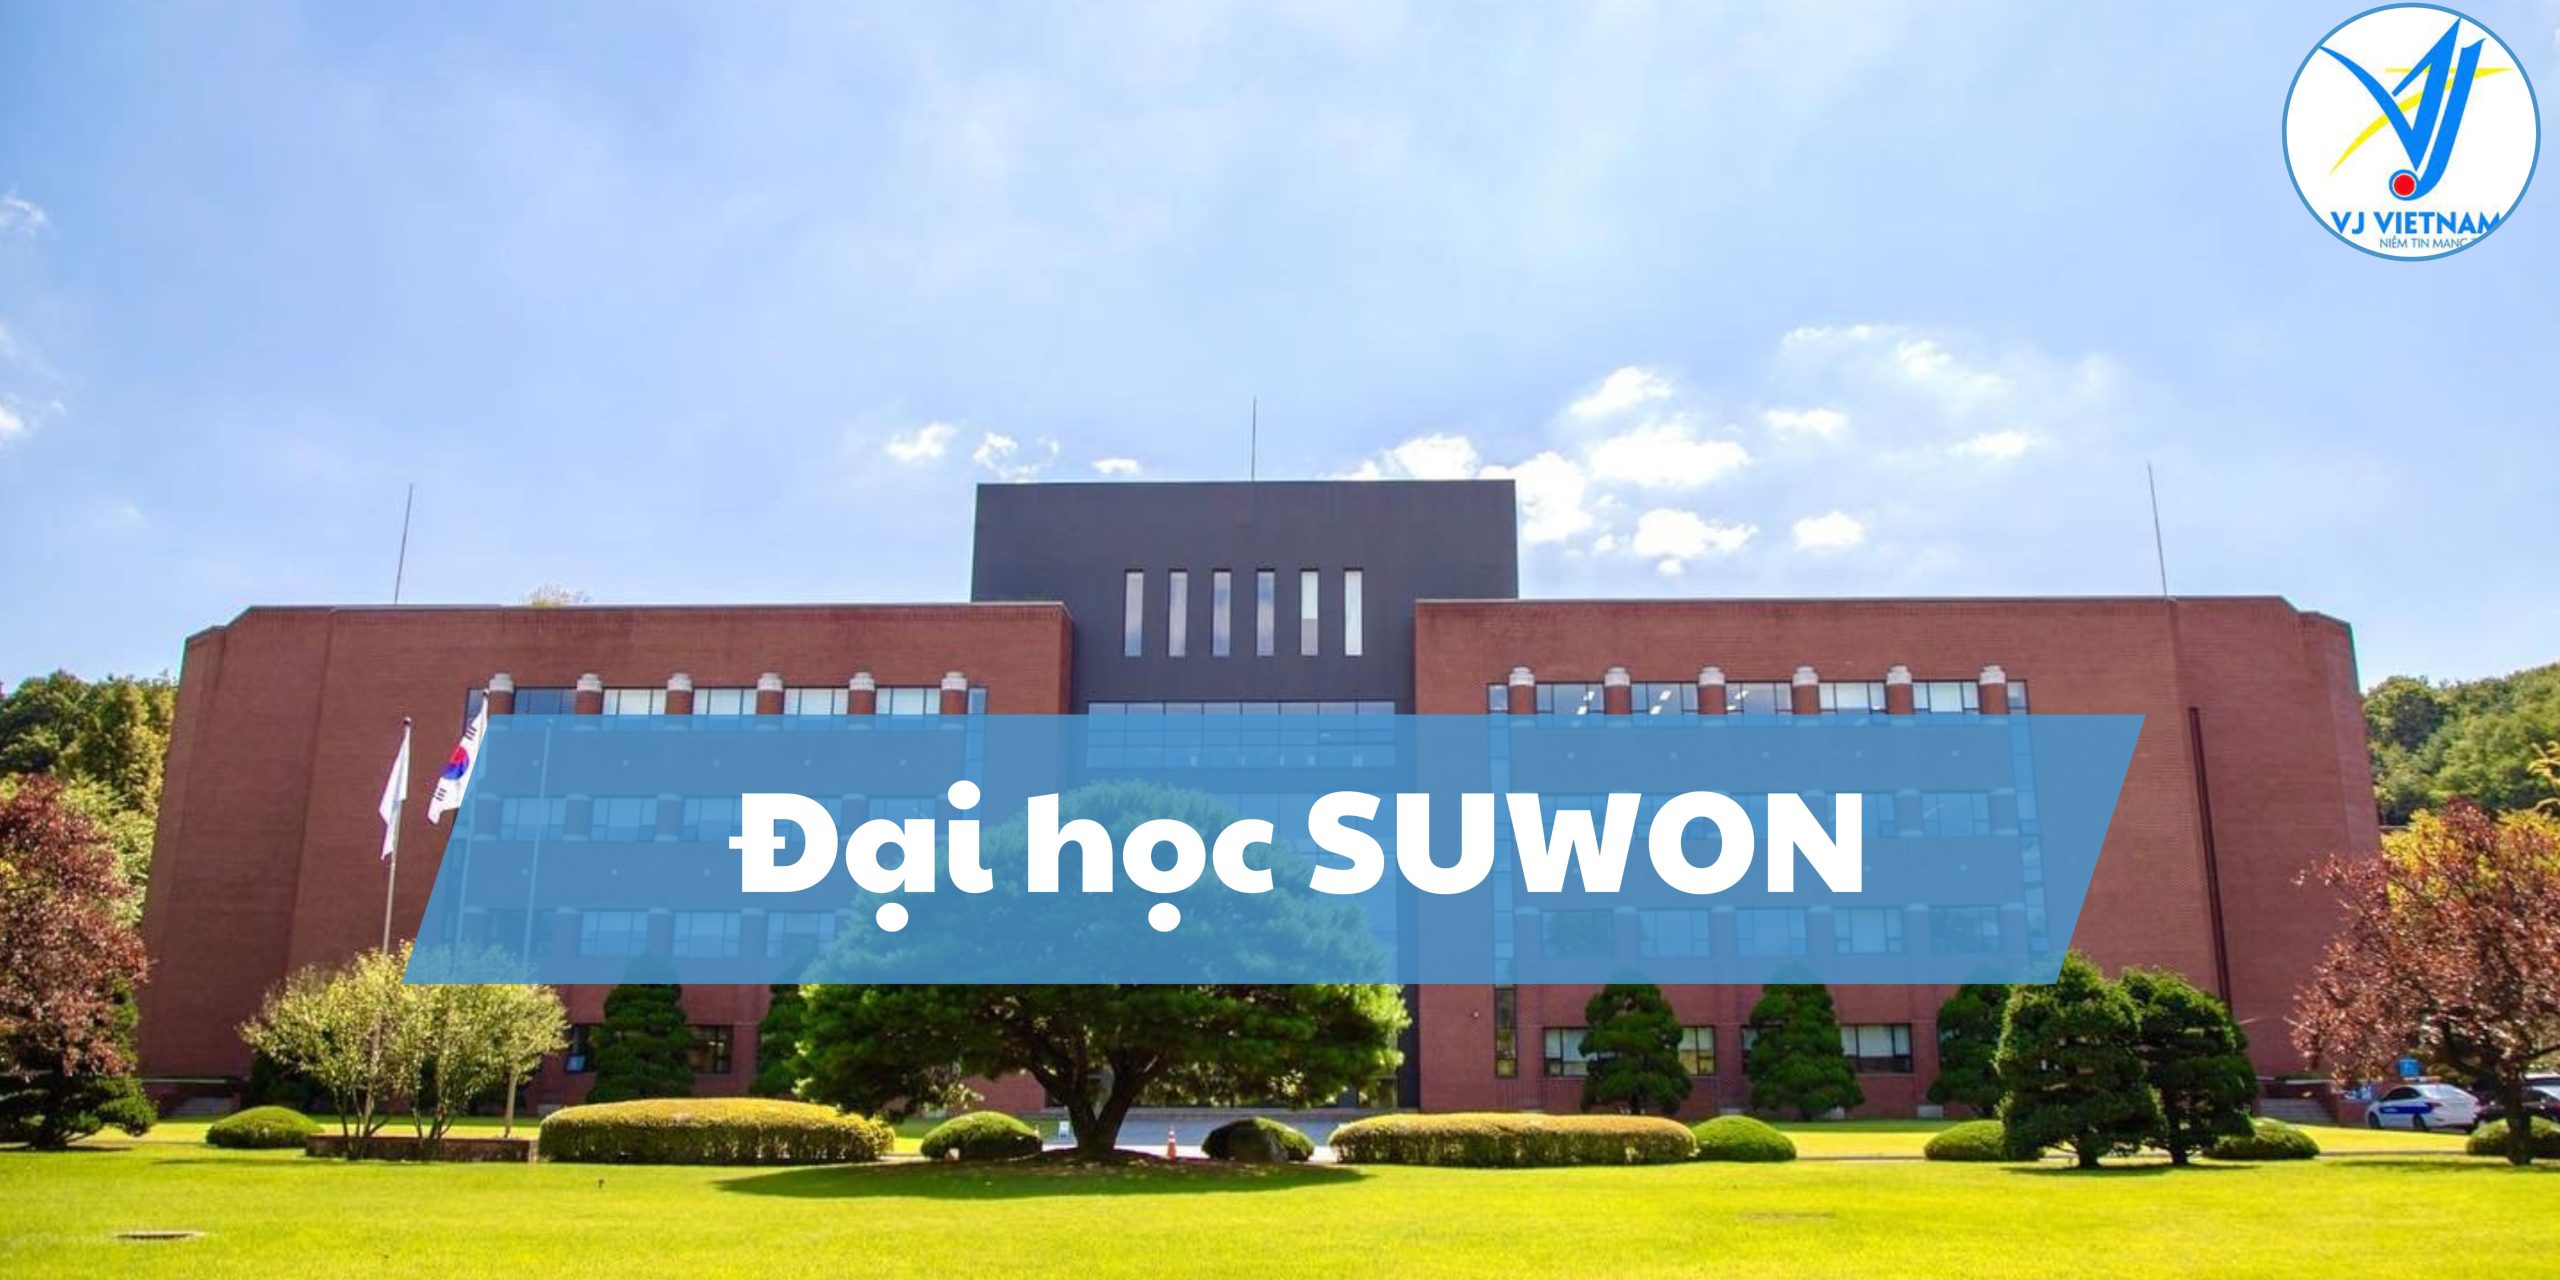 dai hoc suwon scaled